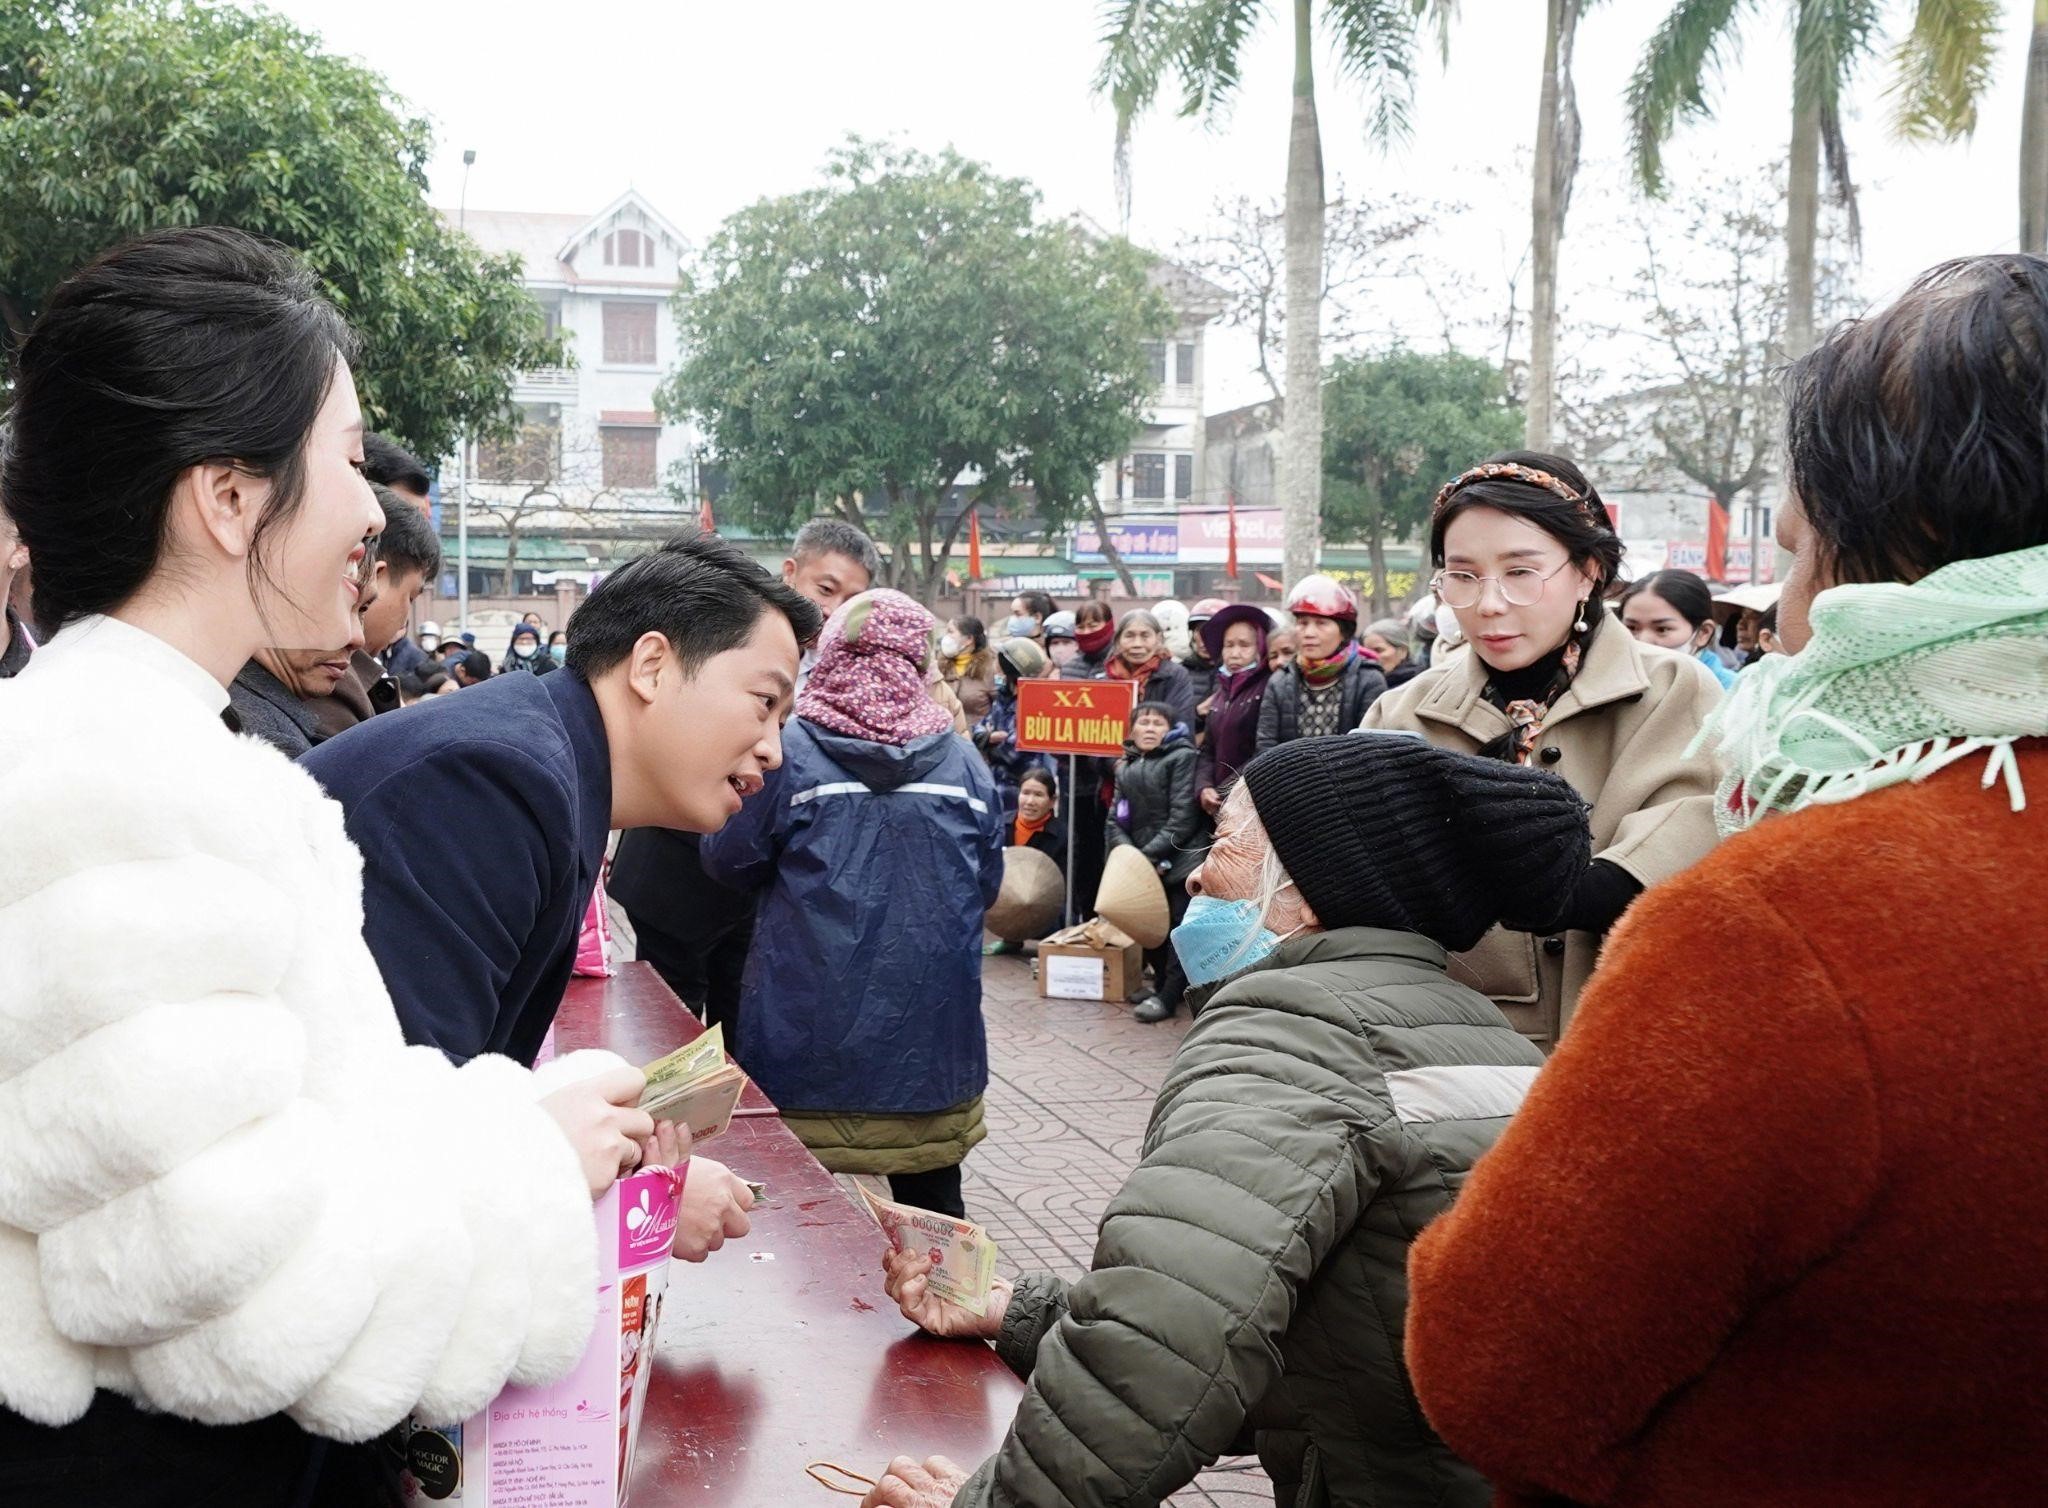 Cần biết - Vừa có tâm vừa có tầm - Doanh nhân Phan Thị Mai và Hoàng Kim Khánh trao tận tay hơn 1000 phần quà tết đến các bà con khó khăn tại xã Đức Thọ, tỉnh Hà Tĩnh (Hình 3).